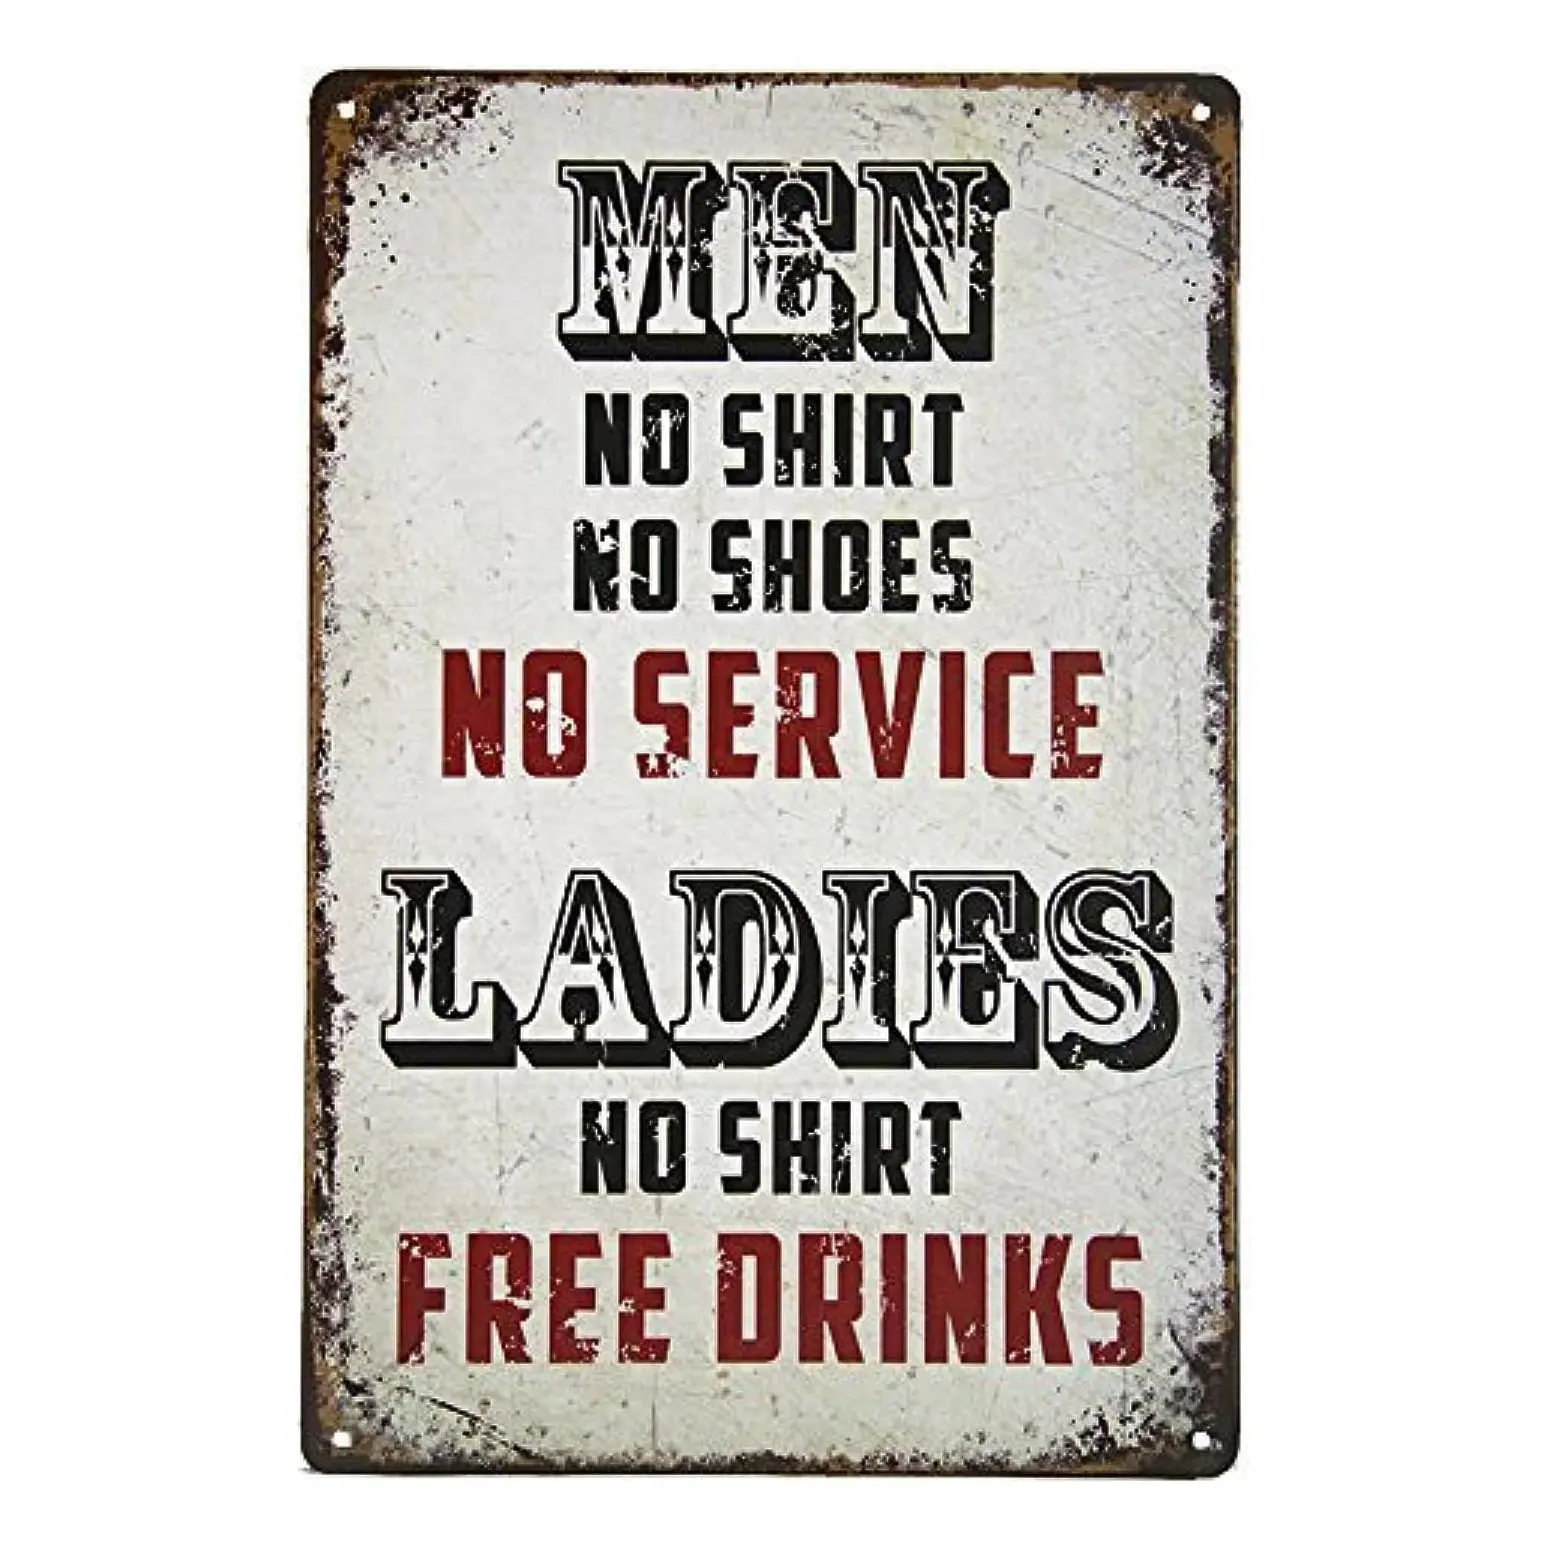 גברים ללא שלט חולצה ללא שירות נשים משקאות חינם גבר מערת פח שלט רטרו מתכת בר פאב פוסטר 12 X 8